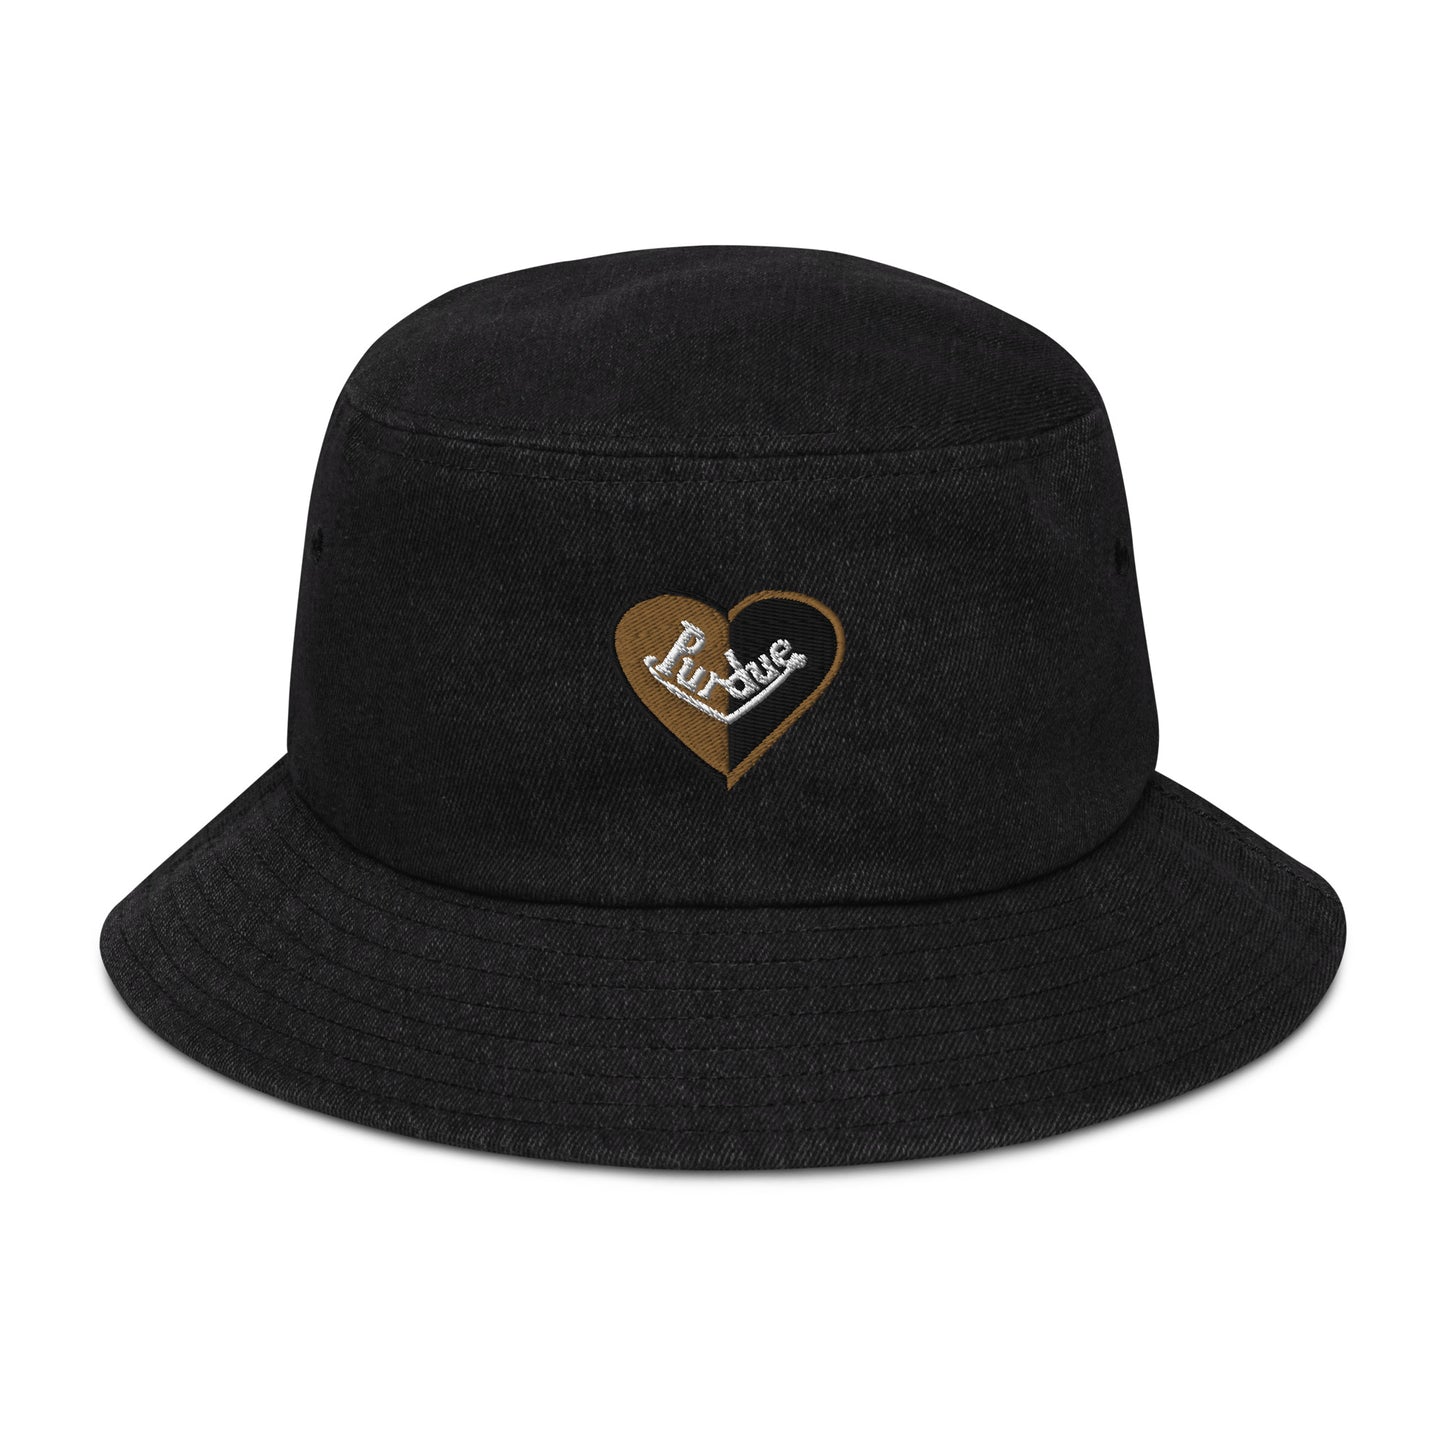 Purdue split heart denim bucket hat